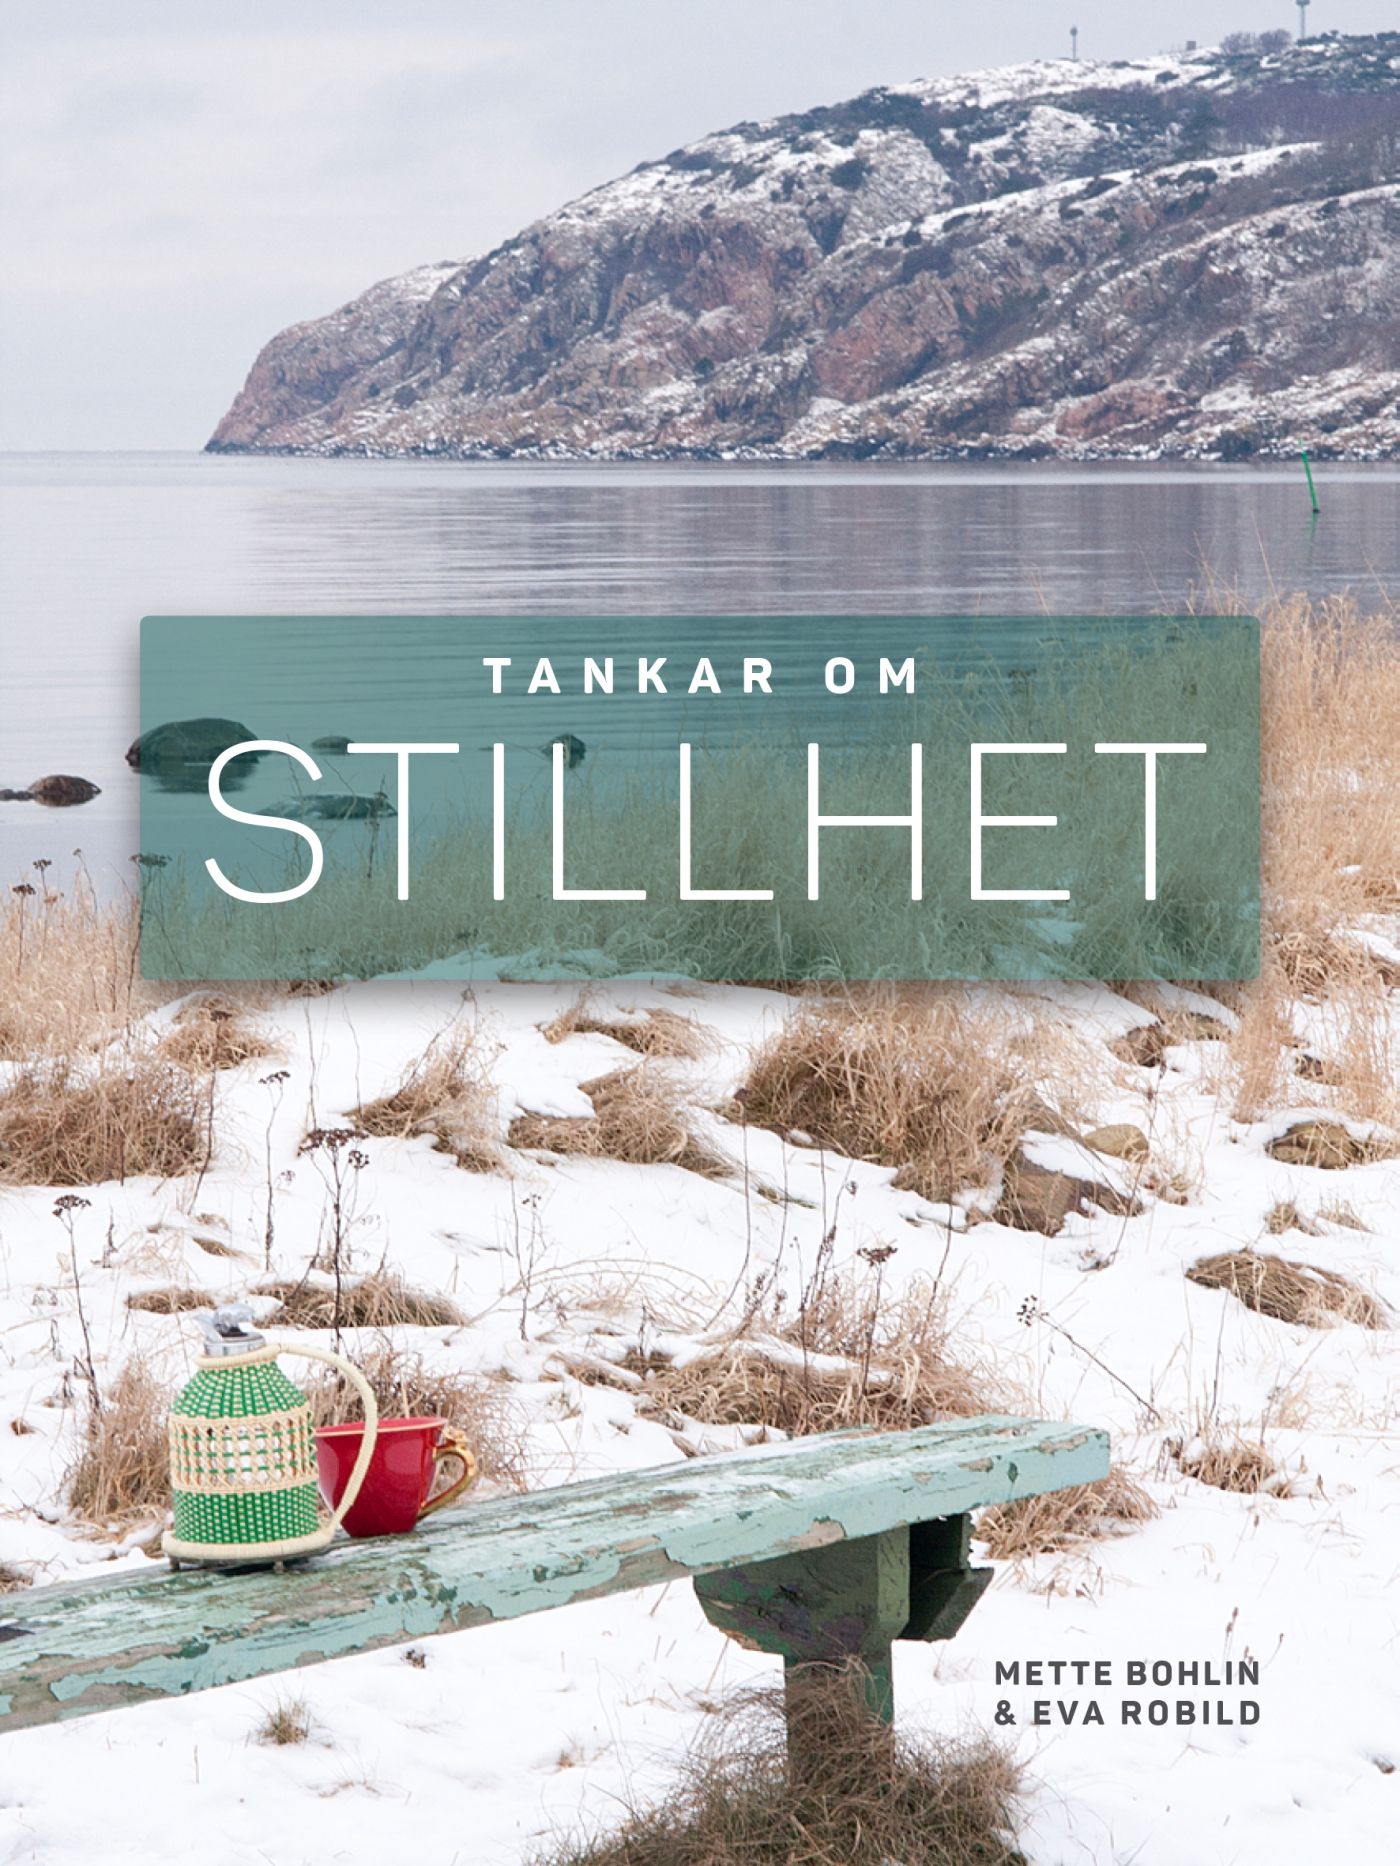 Tankar om Stillhet, eBook by Mette Bohlin, Eva Robild